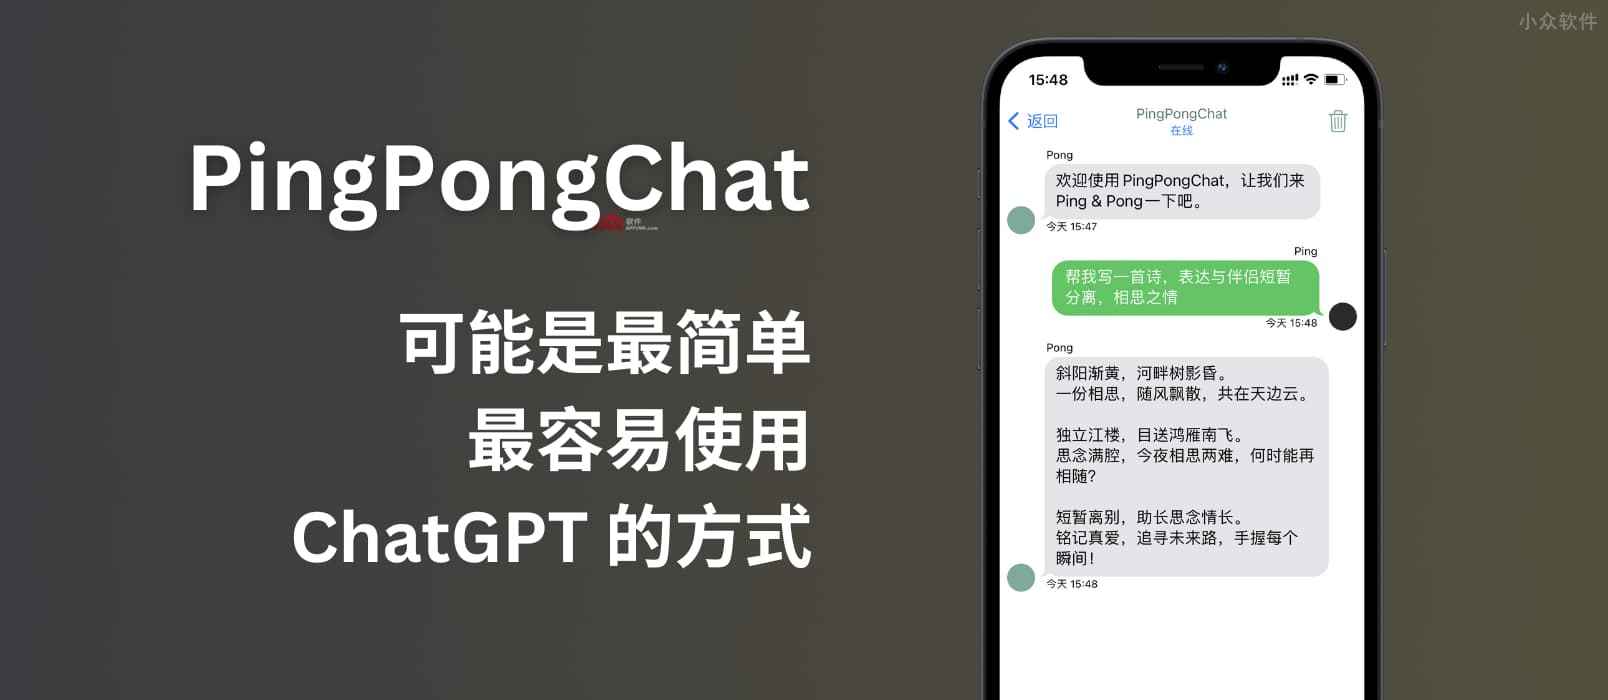 PingPongChat - 这可能是目前最简单、最容易使用 ChatGPT 的方式了[iOS/macOS] 13